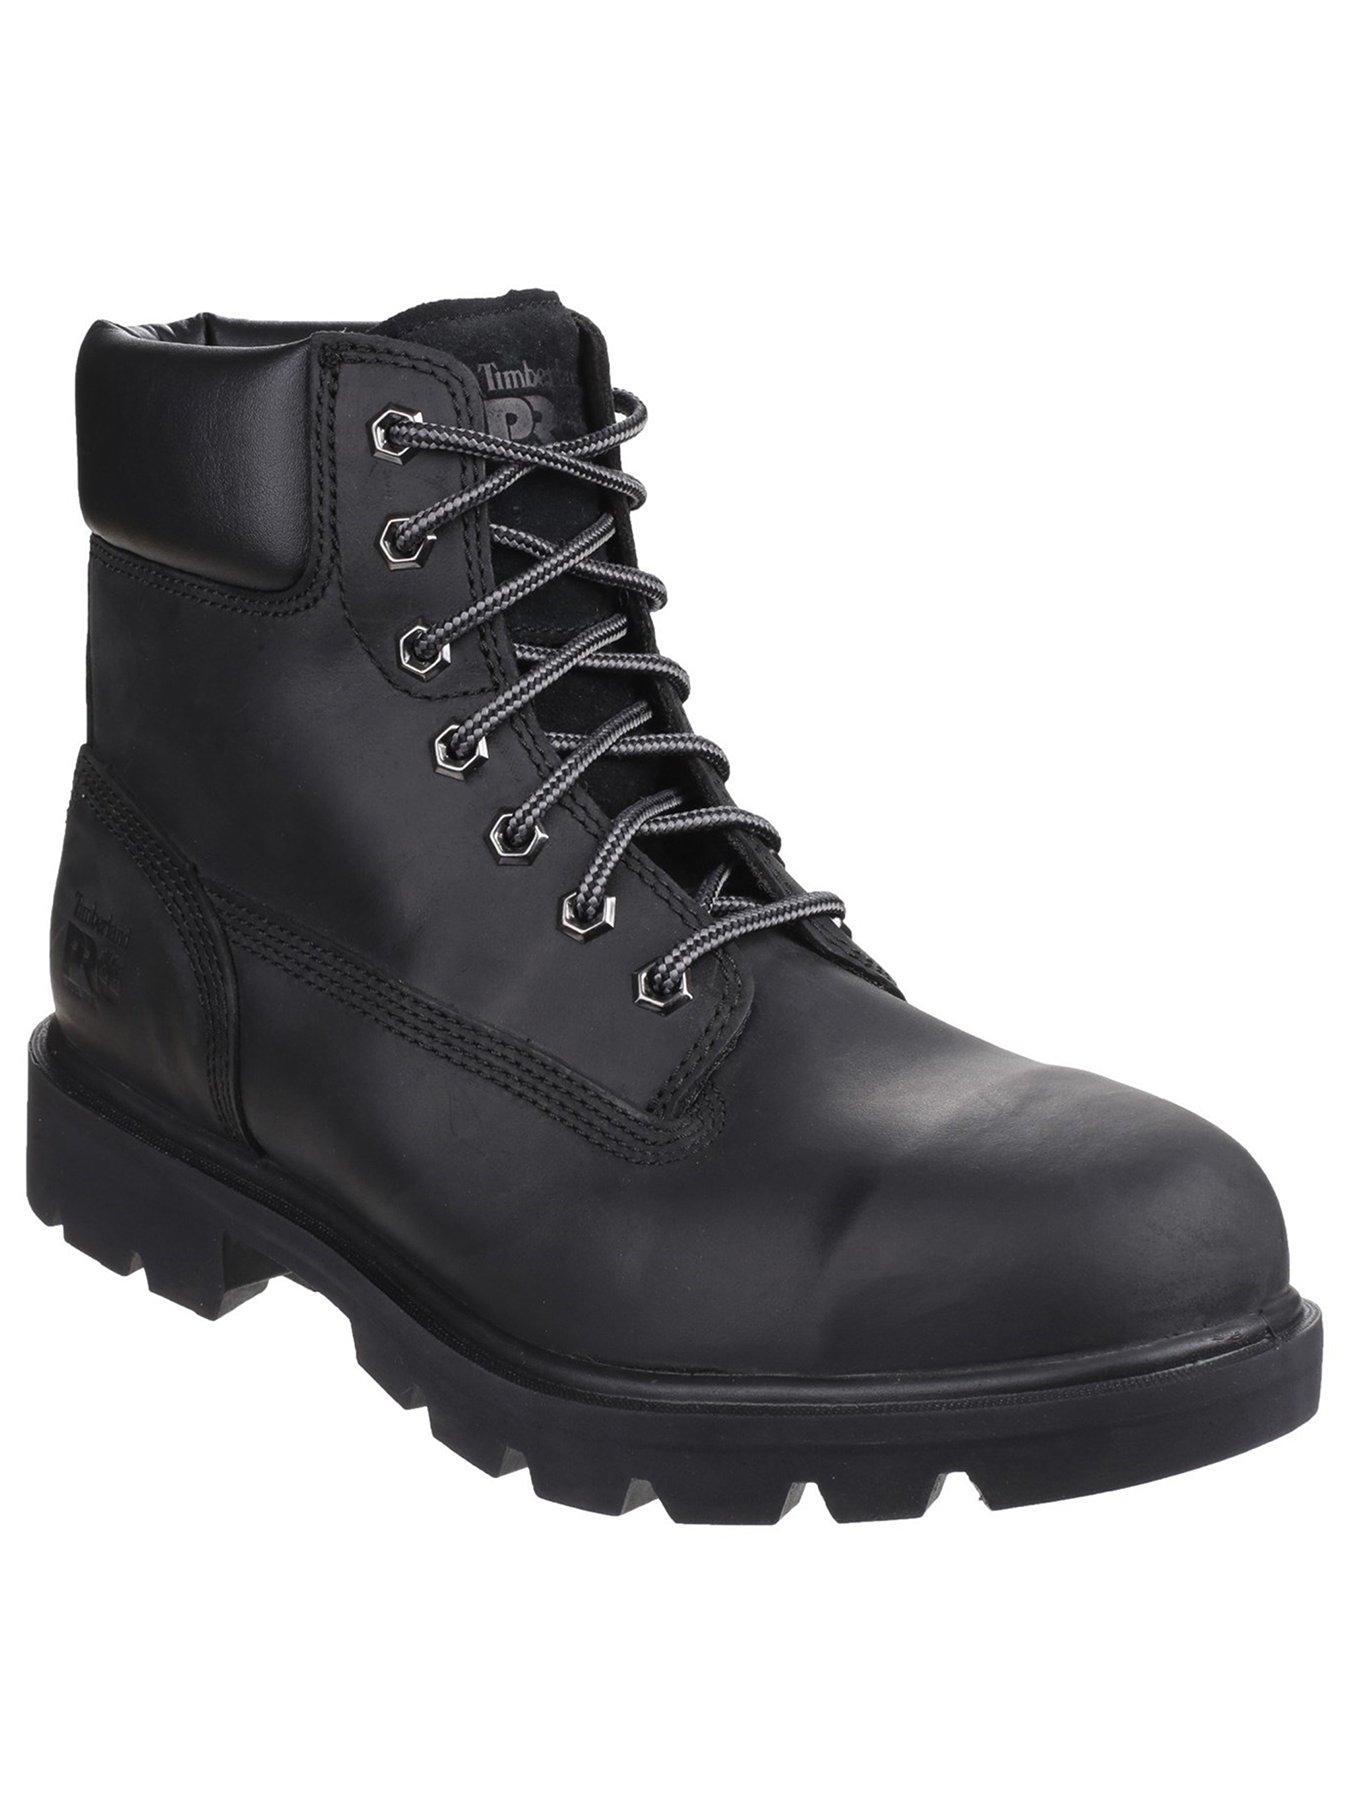 timberland pro sawhorse safety boots black